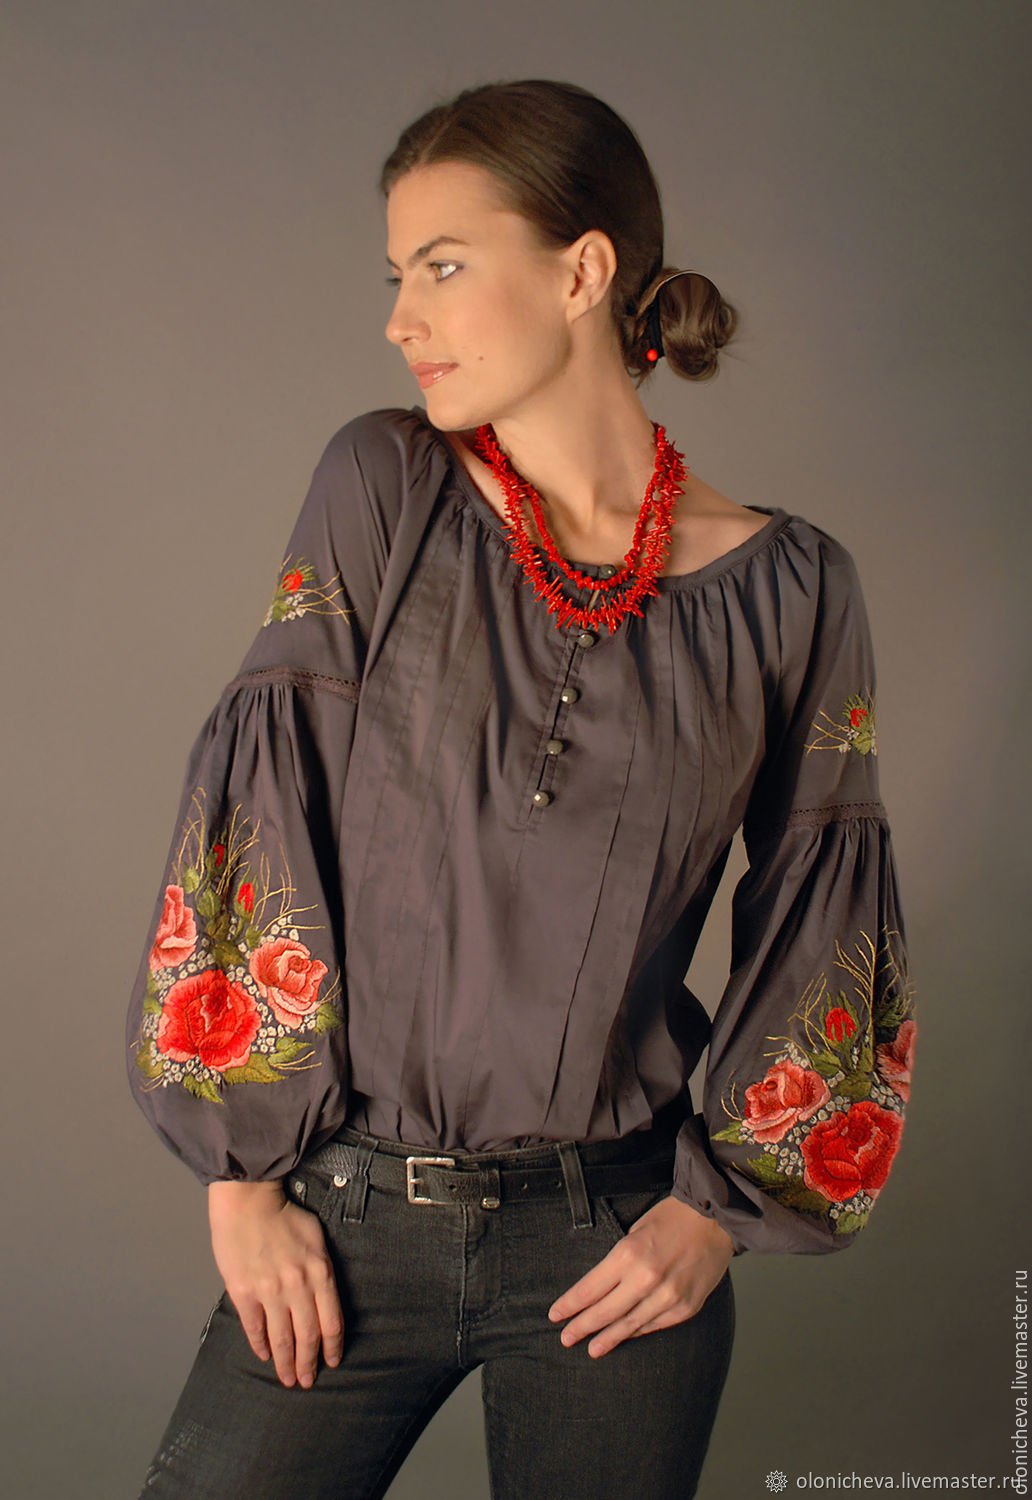 Русско народная блузка. Блузы в народном стиле. Женская блузка в русском стиле. Блущкав народном стиле. Блузка в этно стиле.